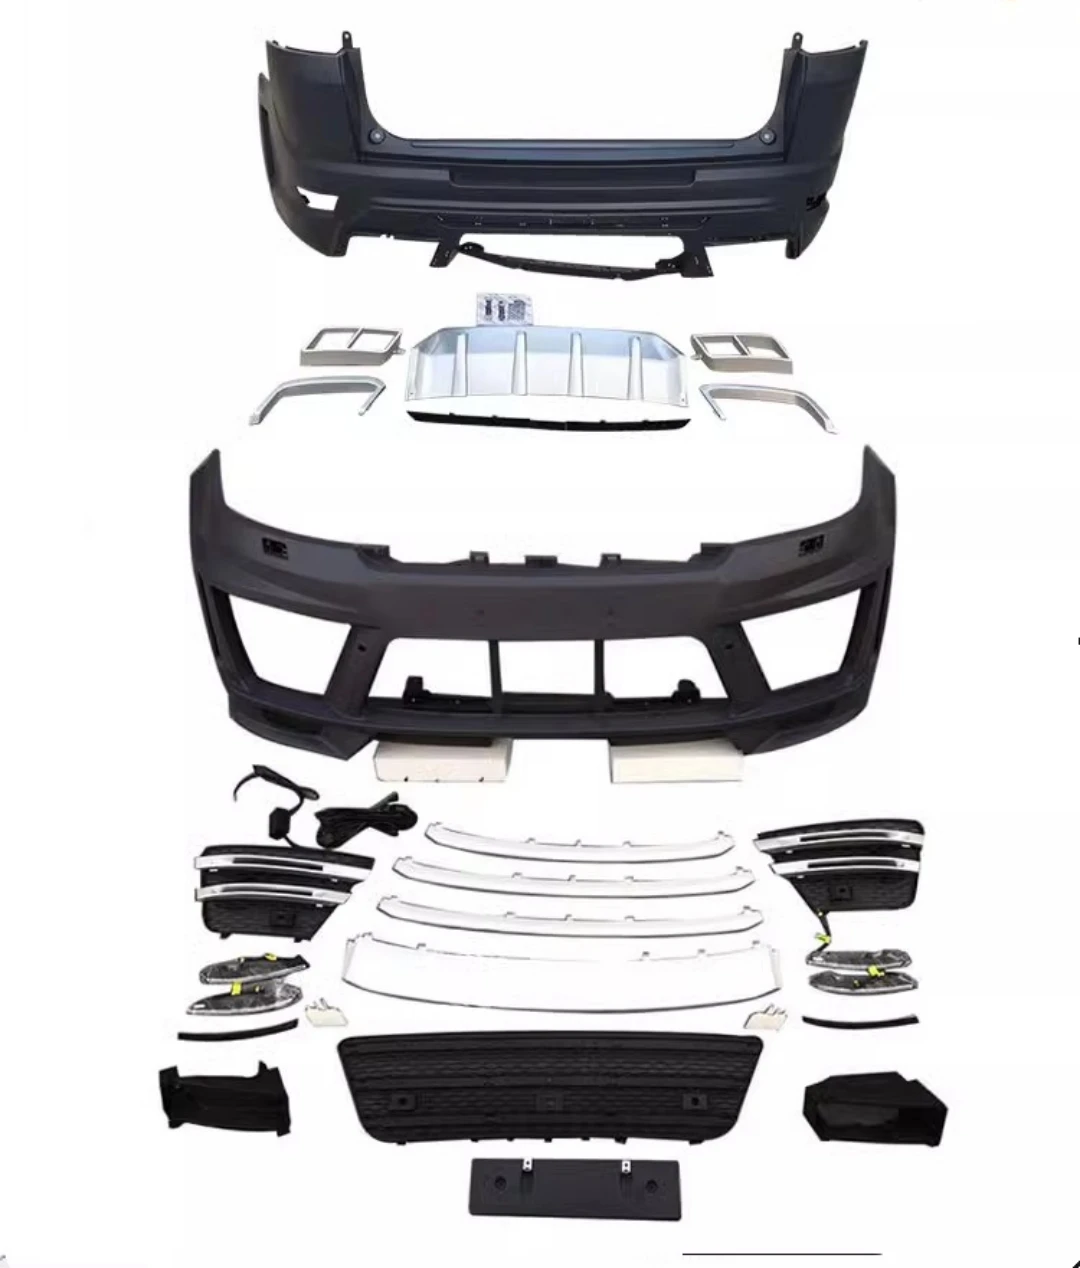 

front rear bumper headlight grill mask assembly body kit for Land Range Rover Sport 2014-17 convert fender side skirt taillight